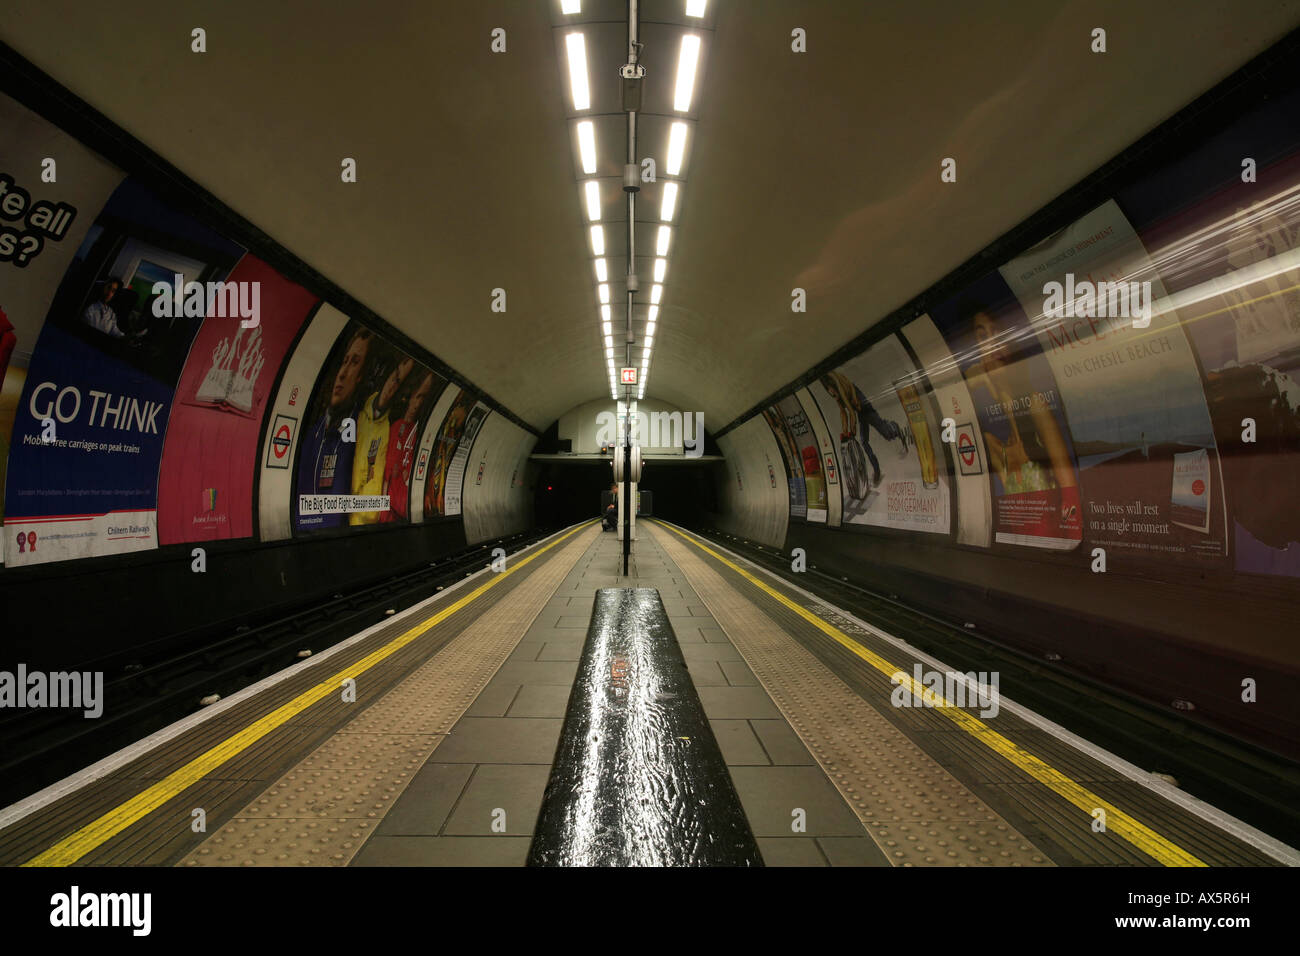 Clapham South underground station, London, England, UK, Europe Stock Photo